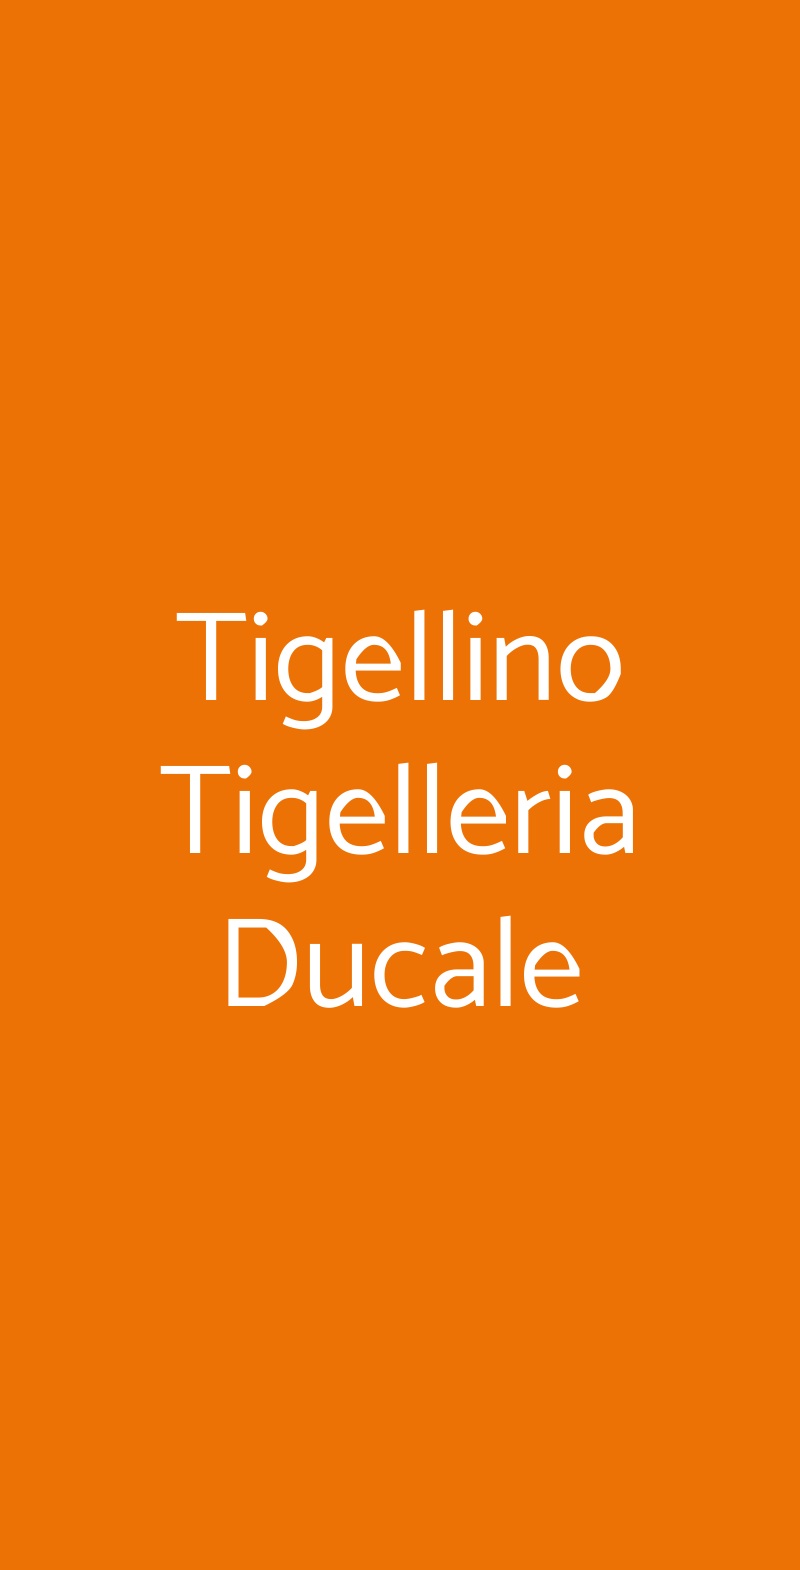 Tigellino Tigelleria Ducale Modena menù 1 pagina